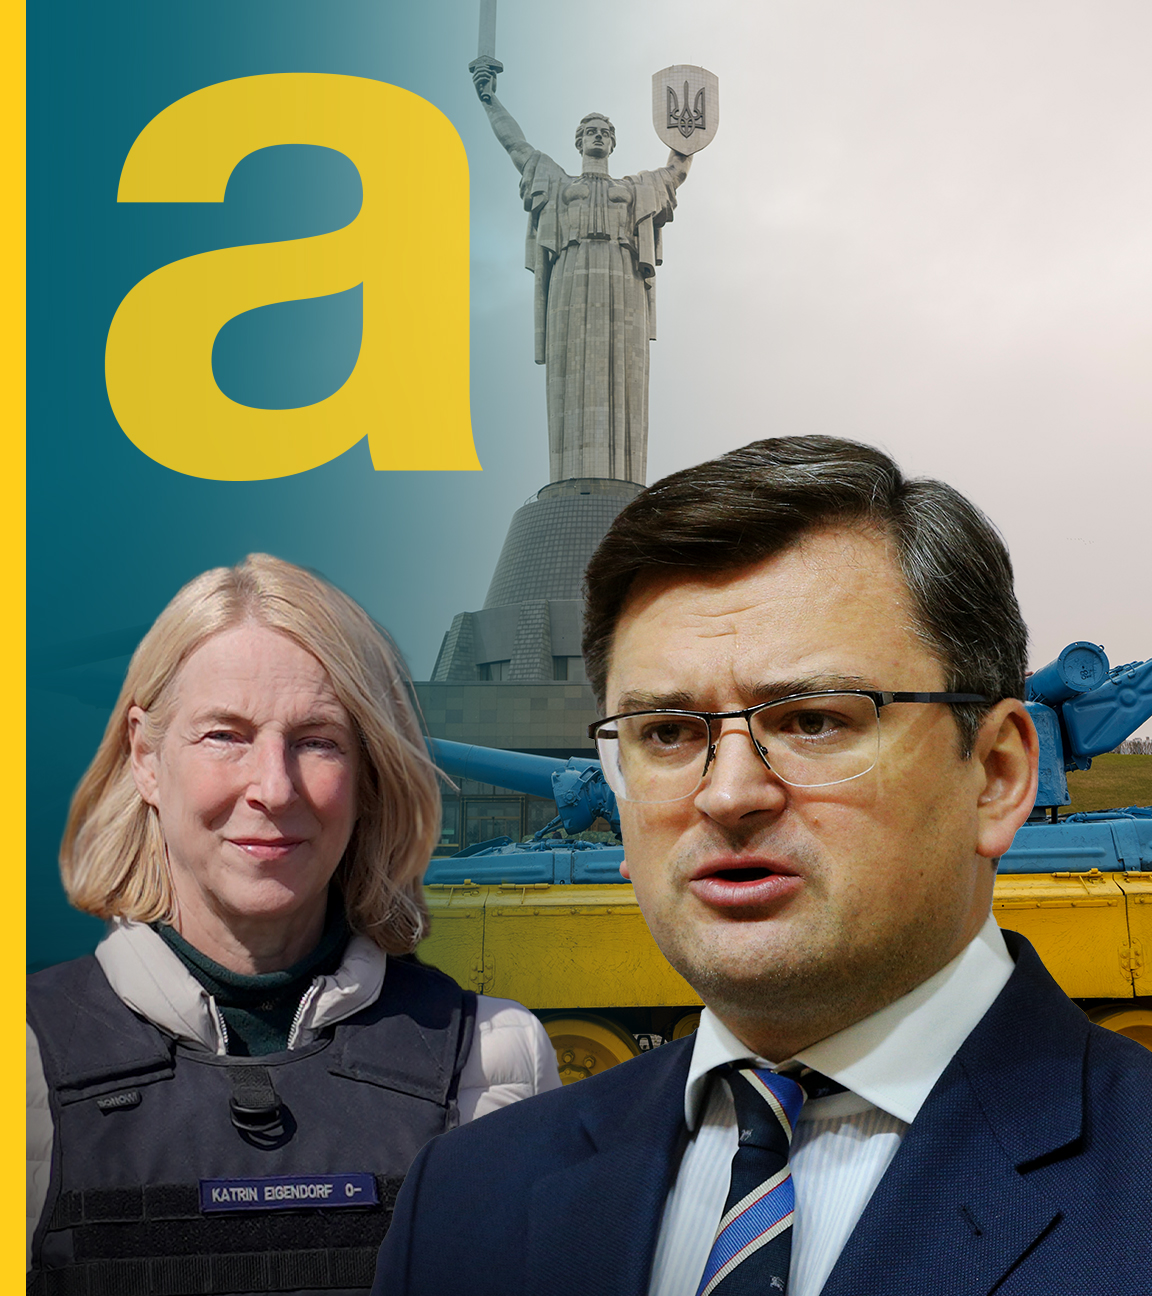 Panzer mit ukranischen Farben im Hintergrund, vorne: Dmytro Kuleba und Katrin Eigendorf